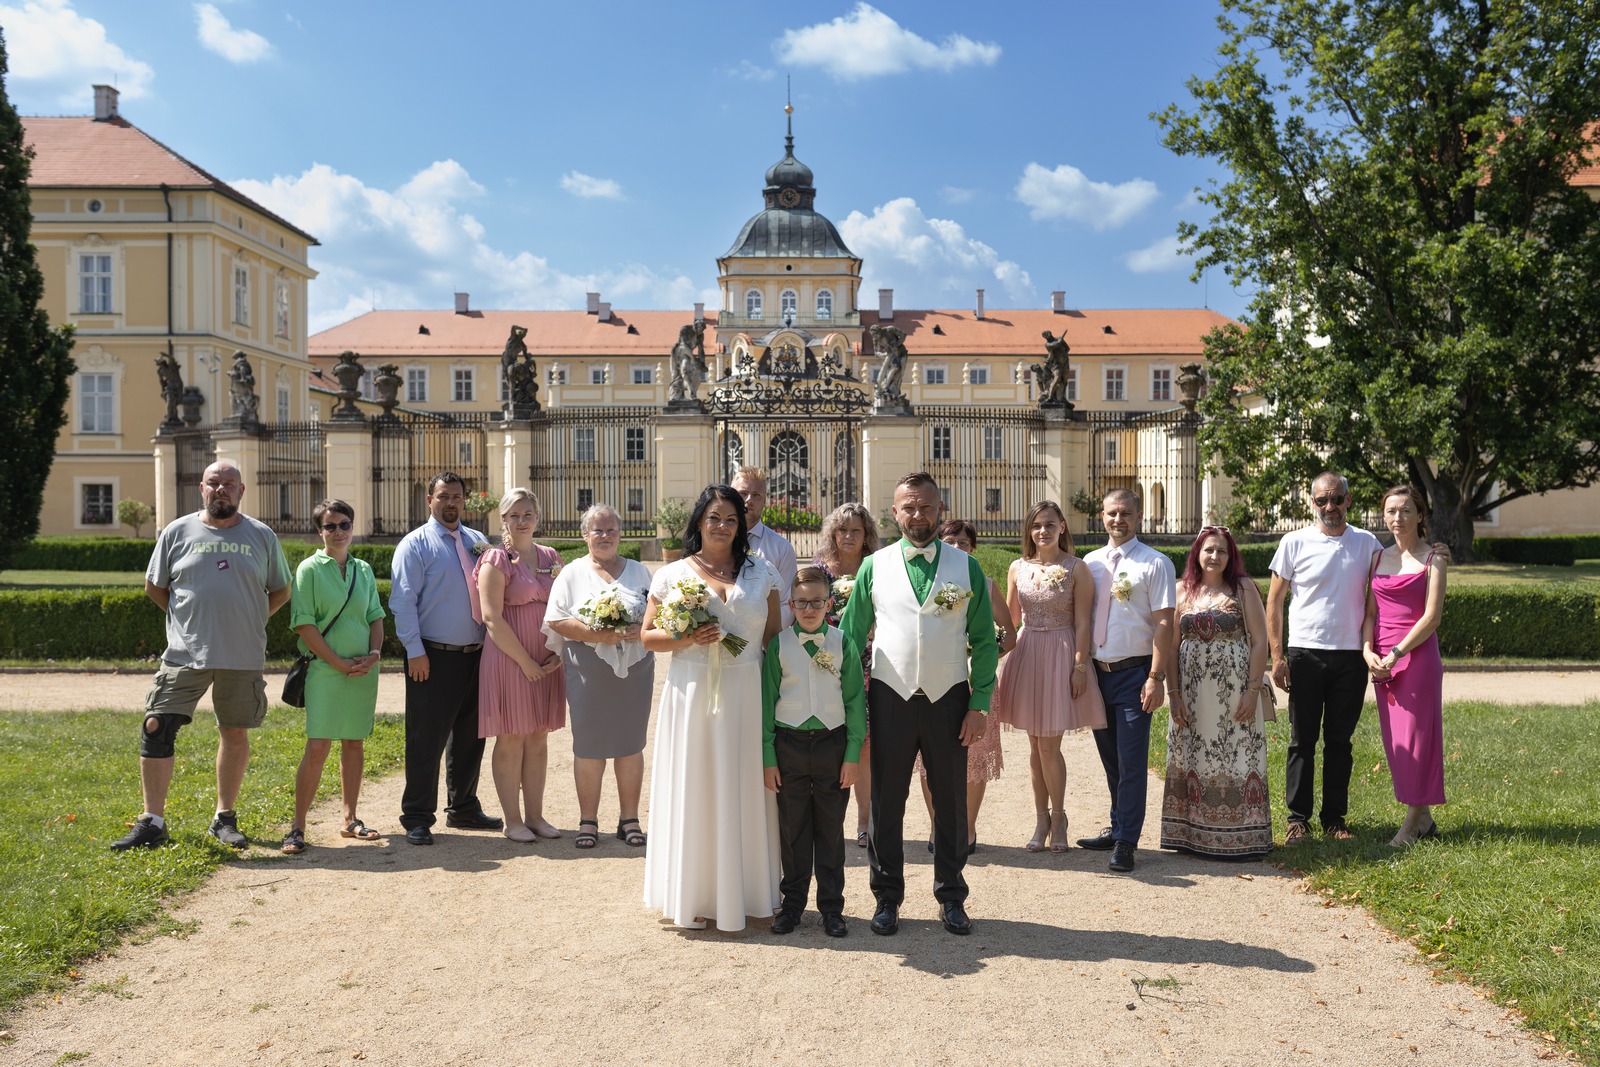 Svatba v Zámeckém parku v Hořovicích - ženich s nevěstou na skupinové fotografii